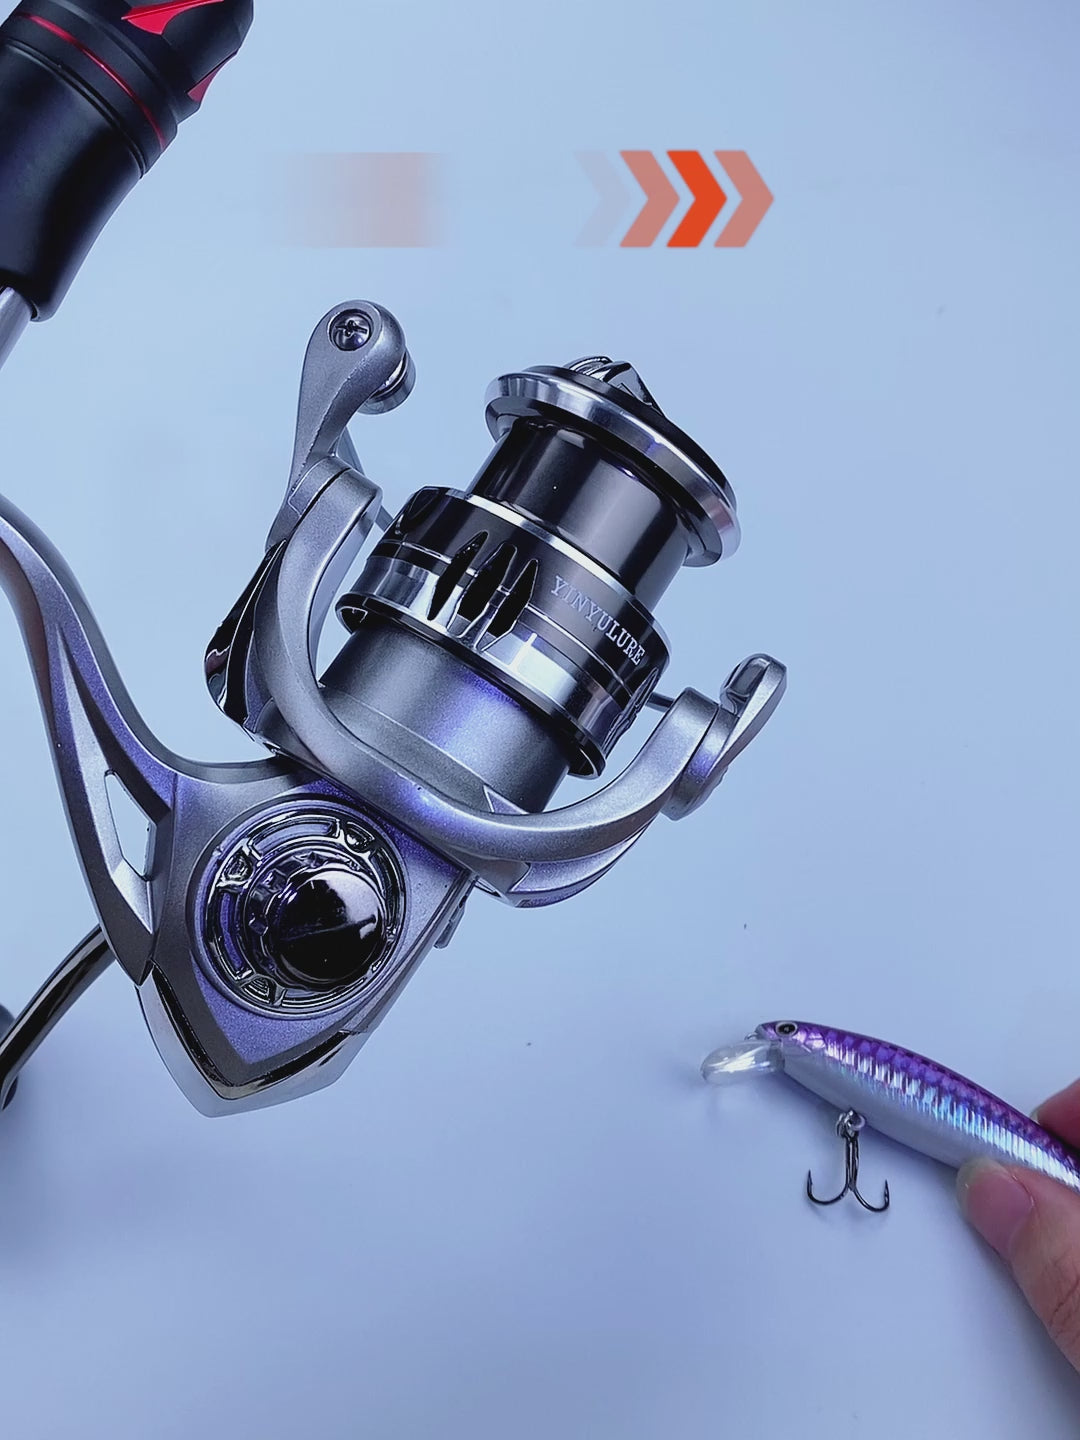 YINYU new MK spinning reel fishing reel sealed bearings without  Anti-Reverse Switch